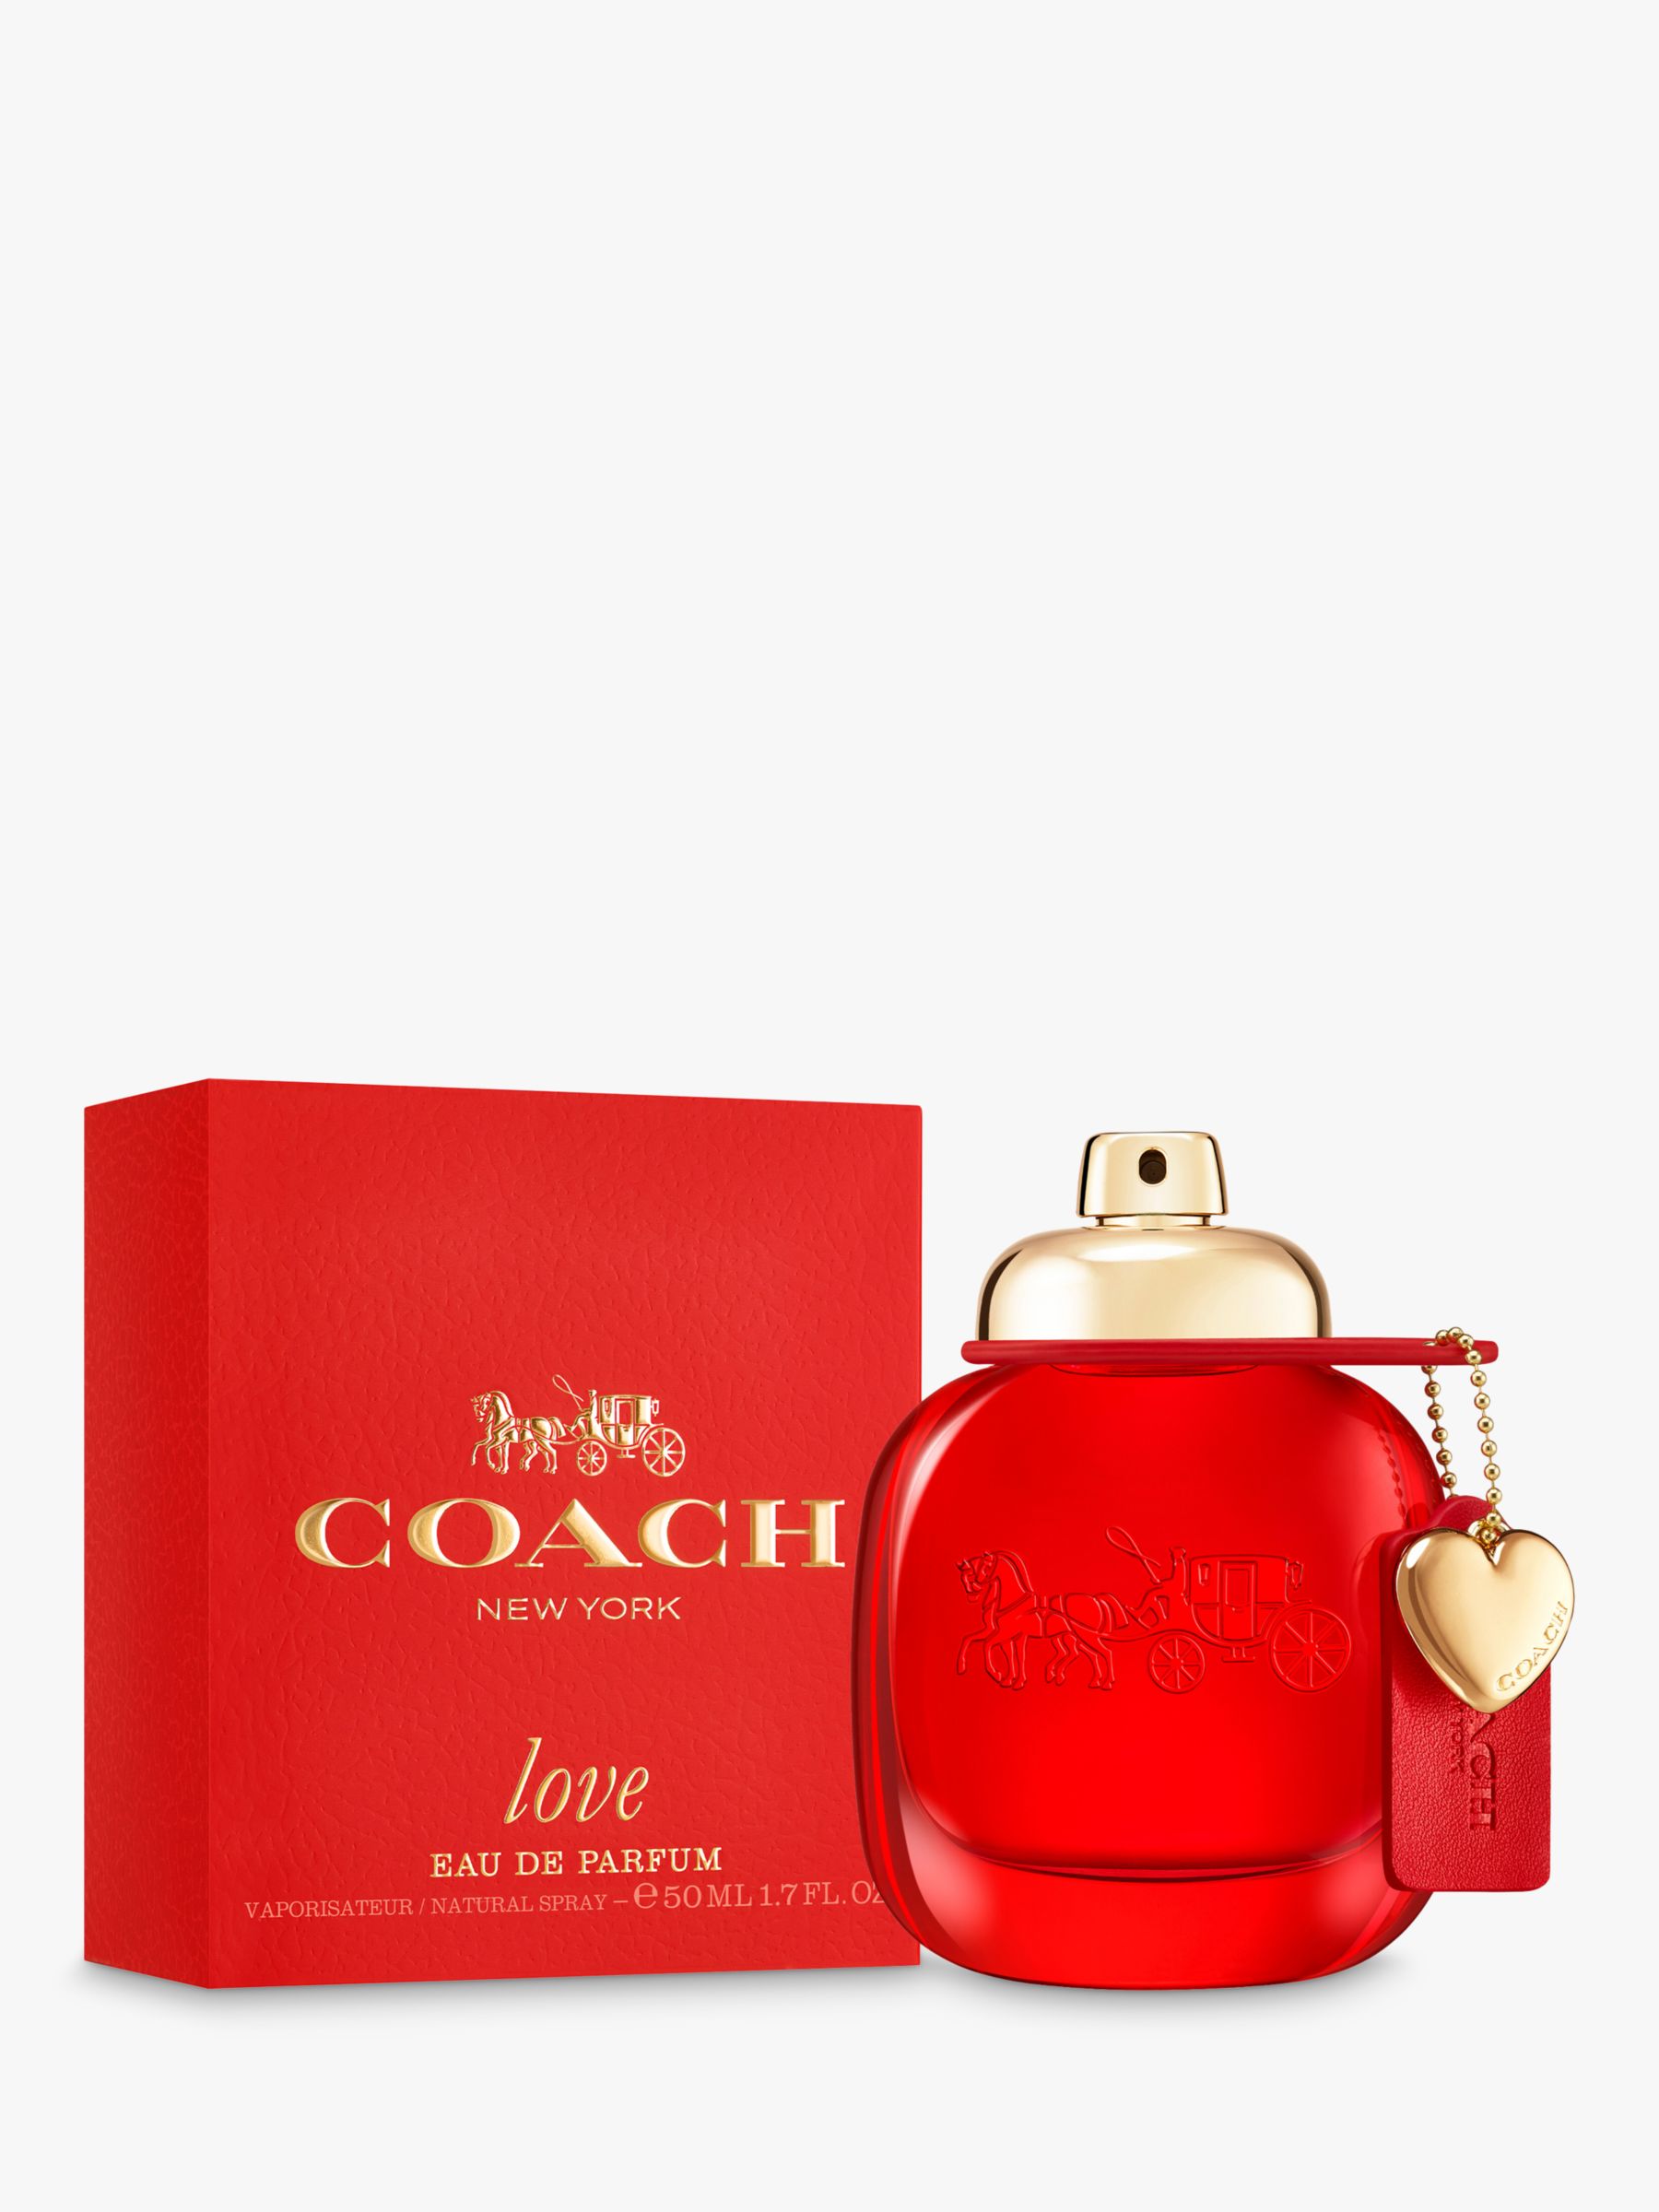 Coach Love Eau de Parfum, 50ml at John Lewis & Partners